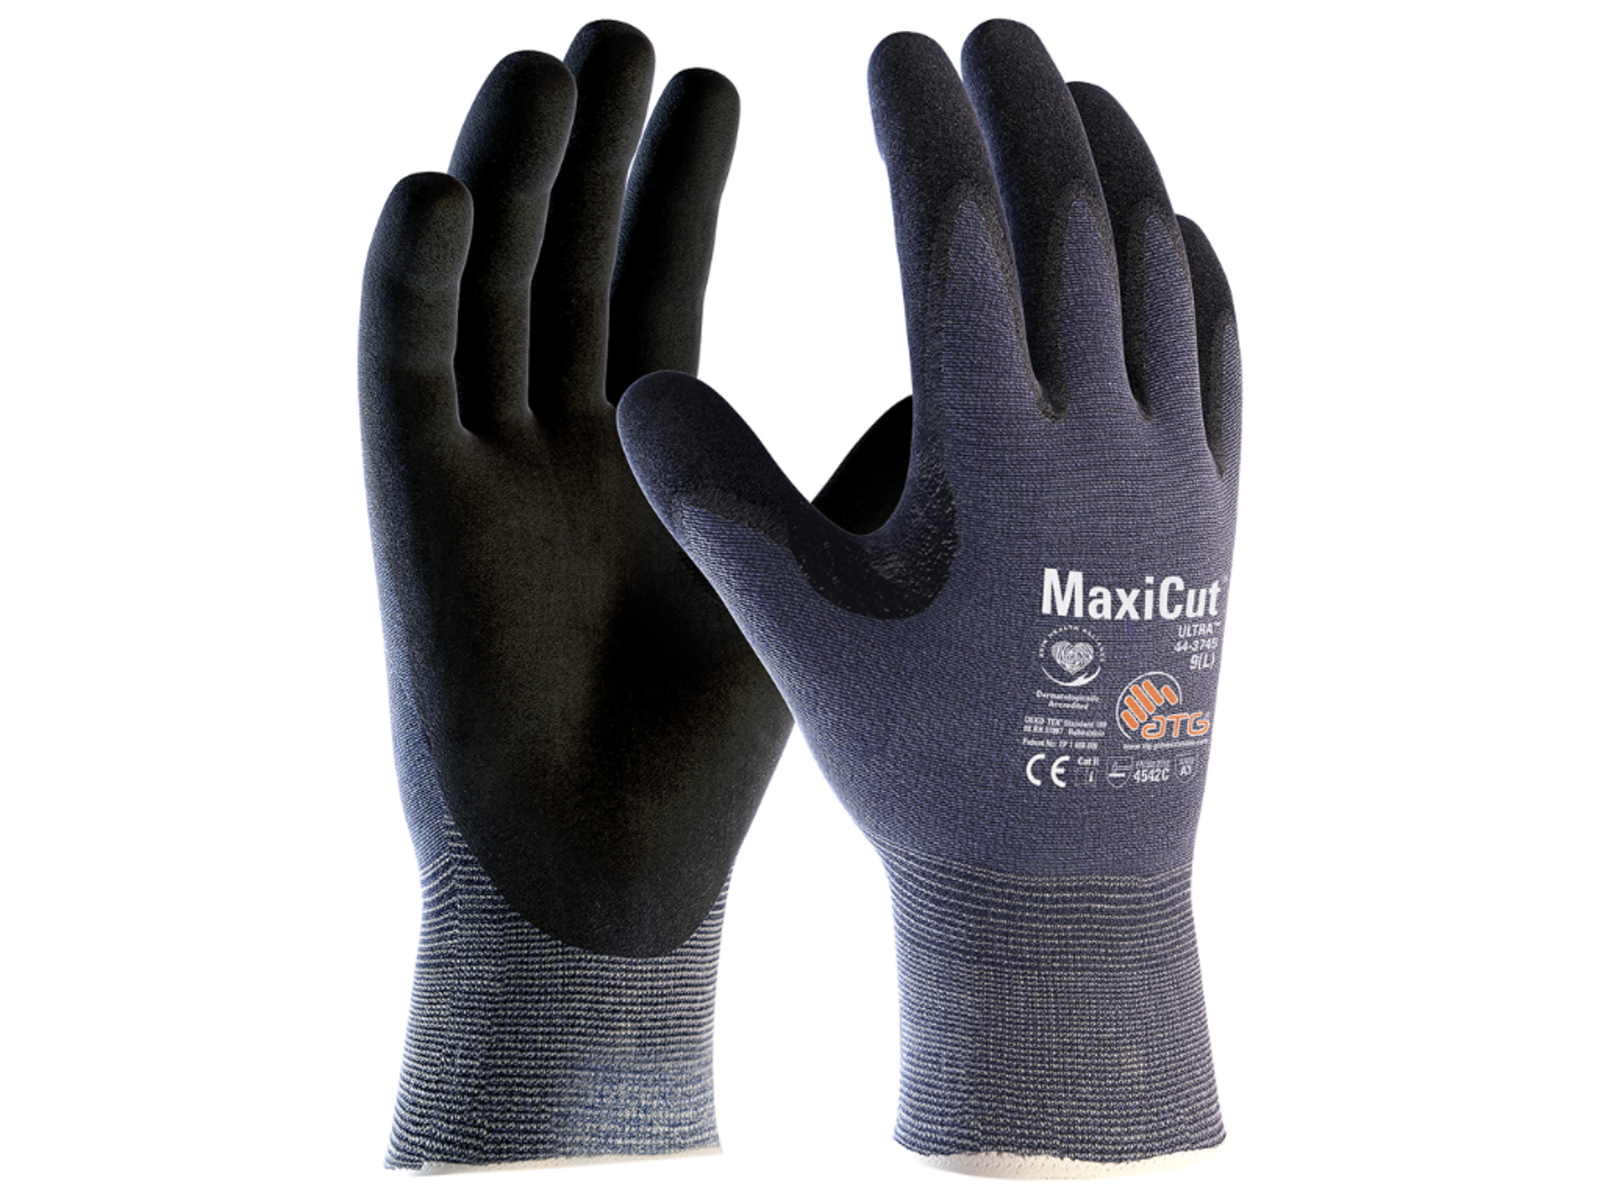 Protiporézne rukavice ATG MaxiCut Ultra 44-3745 - veľkosť: 6/XS, farba: modrá